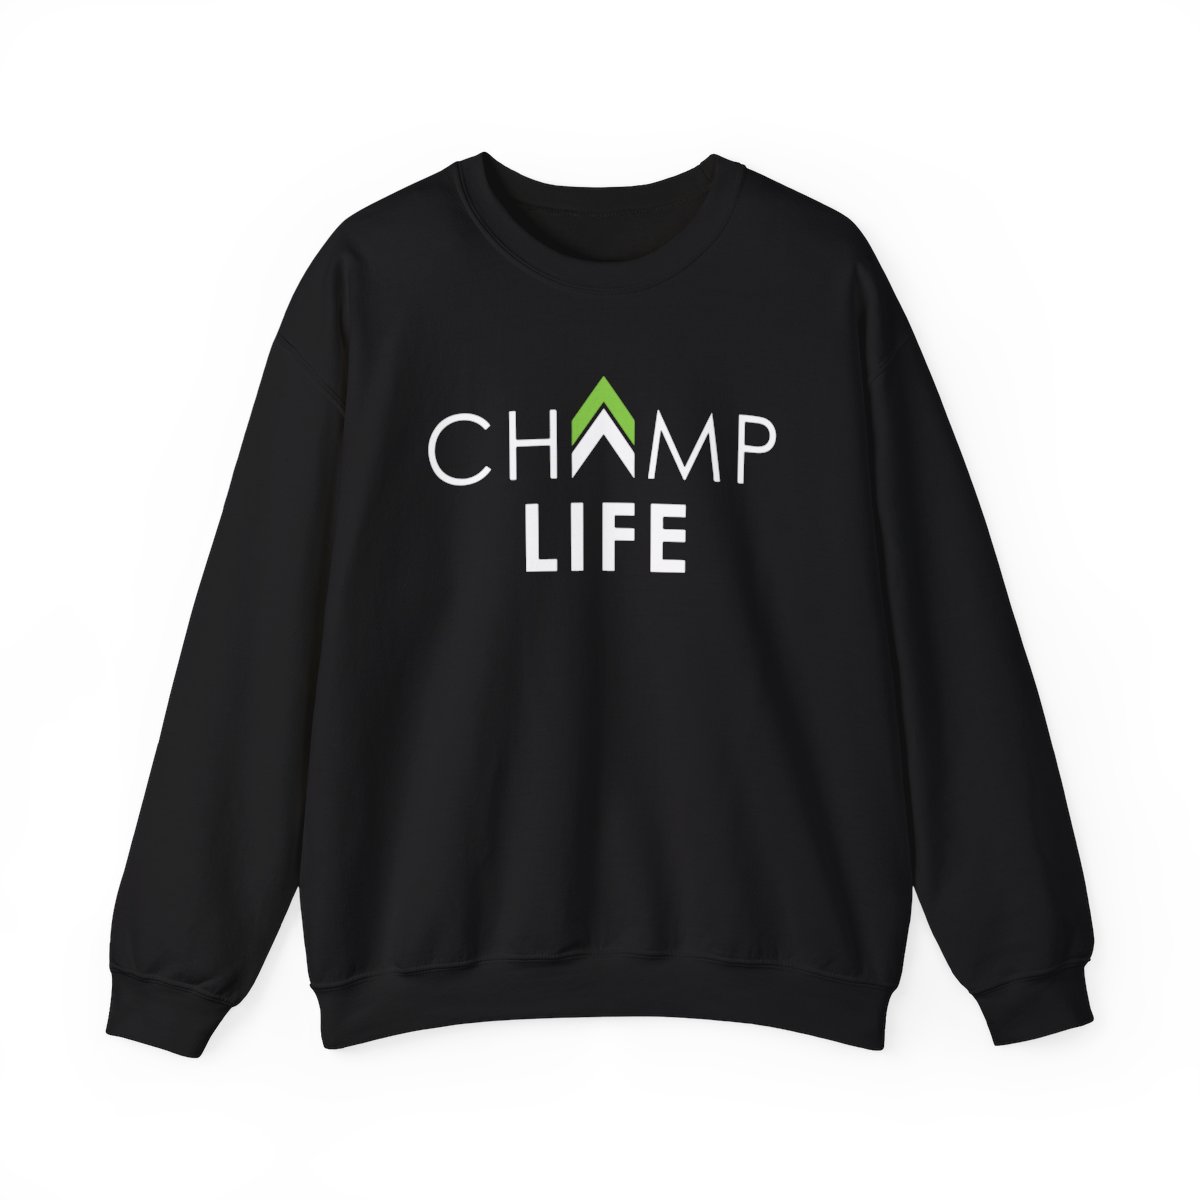 Champ Life Unisex Crewneck Sweatshirt - Black product main image